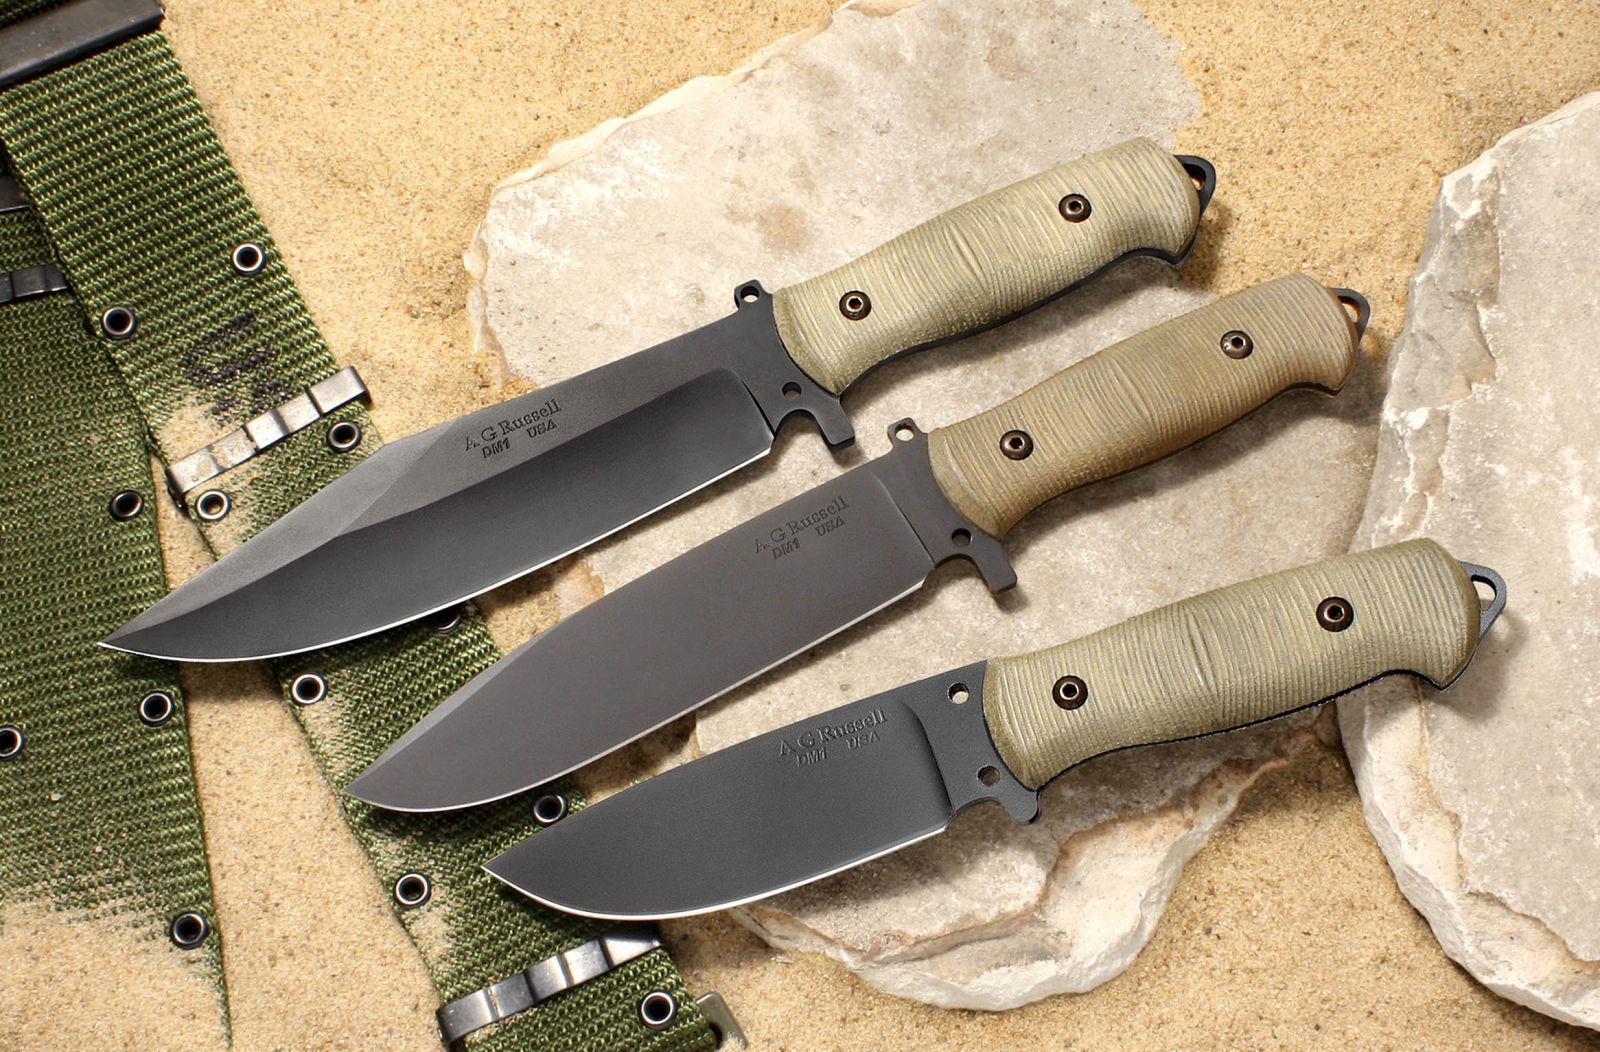 A.G. Russell USA Shopmade Sandbox Knife Series - Non-stainless steel DM-1